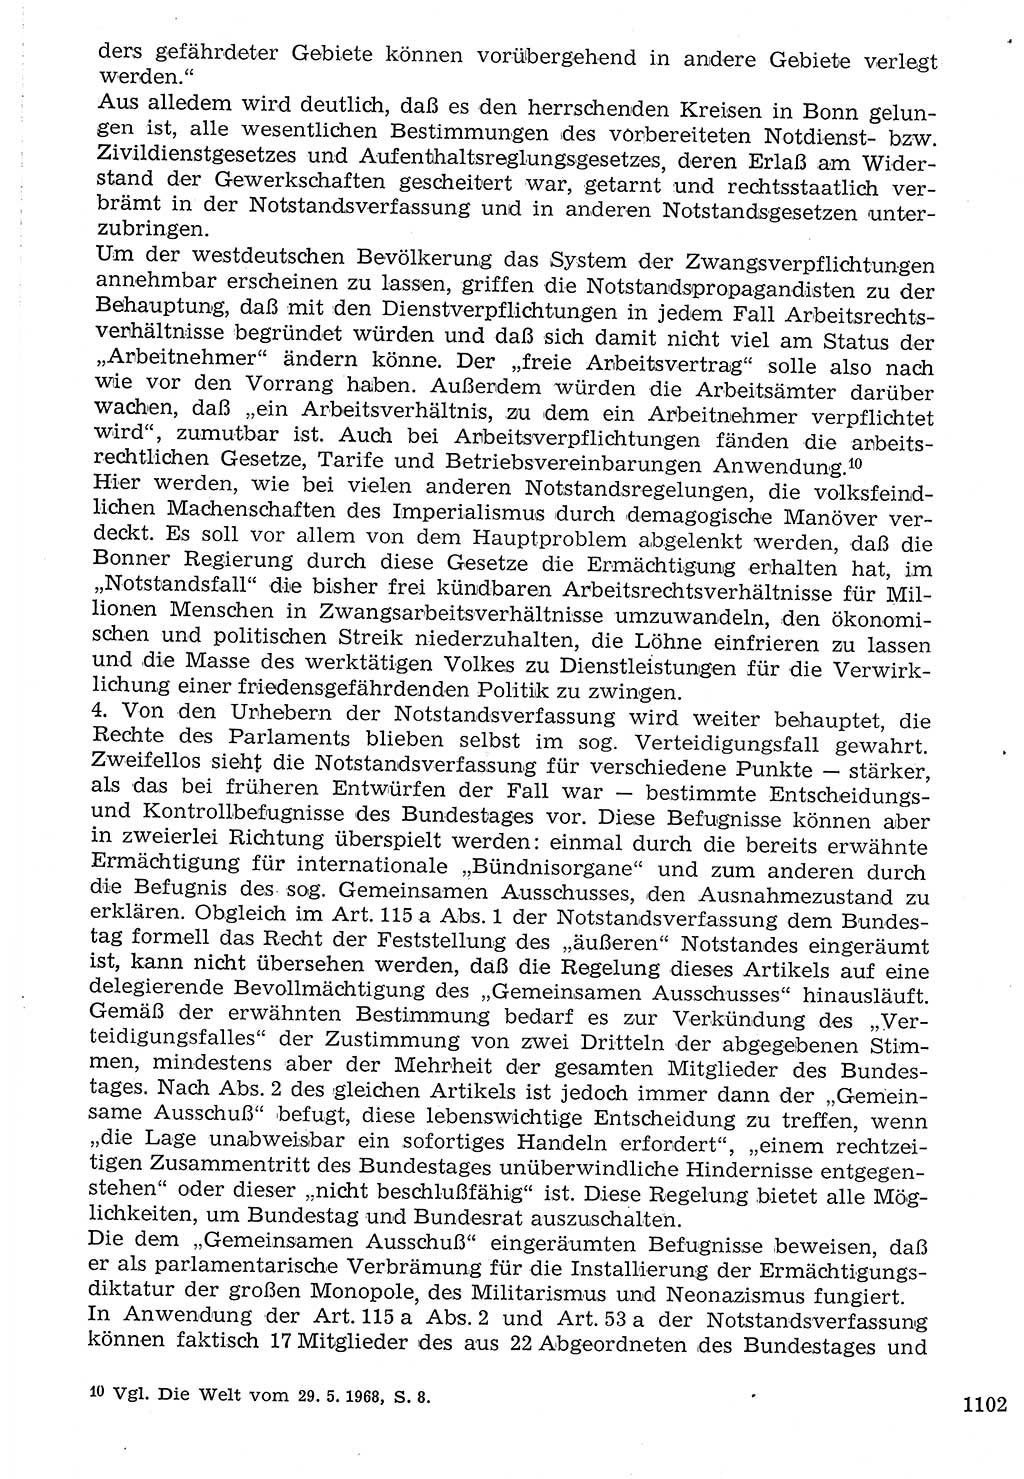 Staat und Recht (StuR), 17. Jahrgang [Deutsche Demokratische Republik (DDR)] 1968, Seite 1102 (StuR DDR 1968, S. 1102)